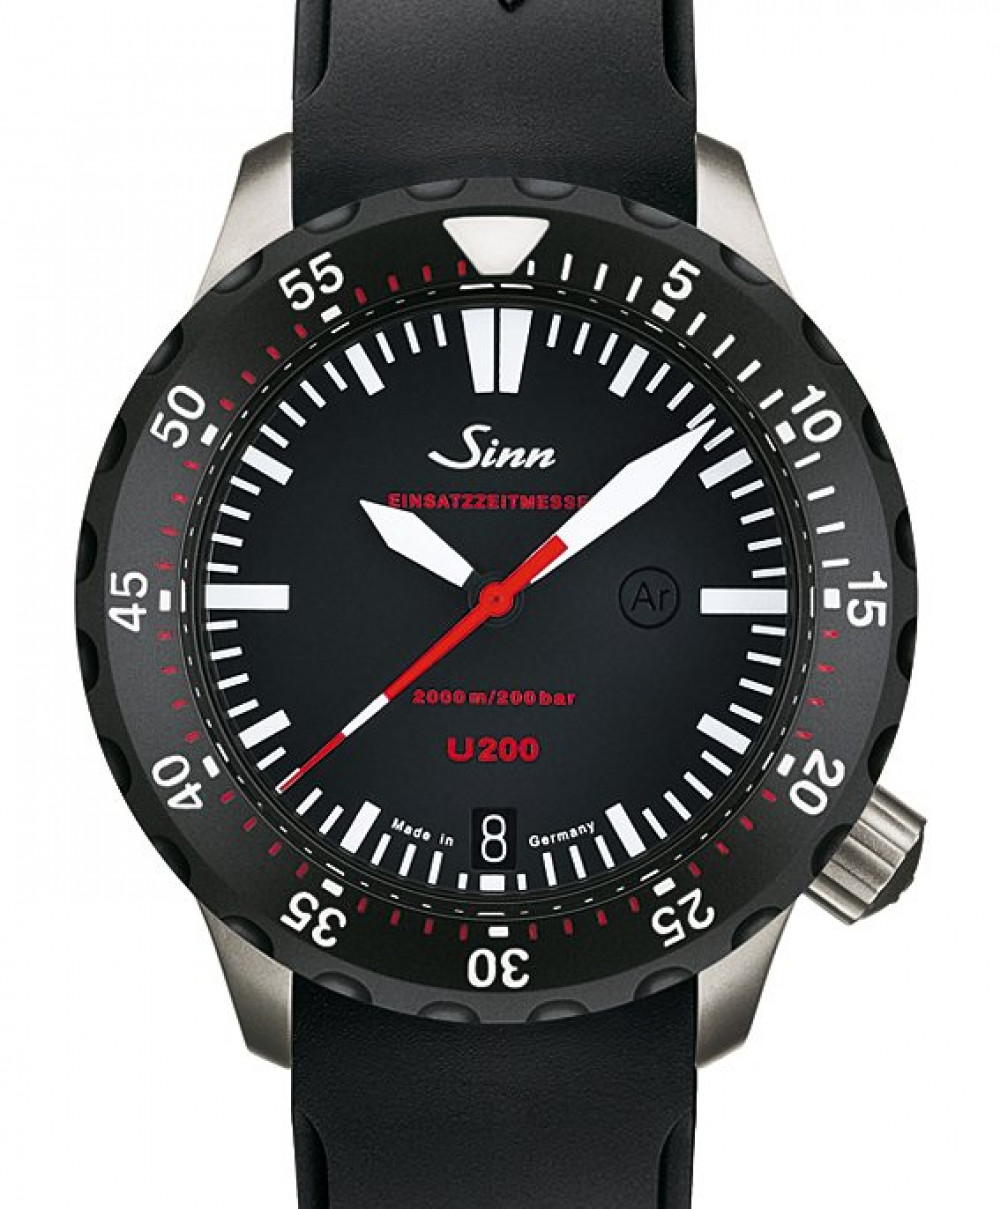 Zegarek firmy Sinn, model U200 SDR